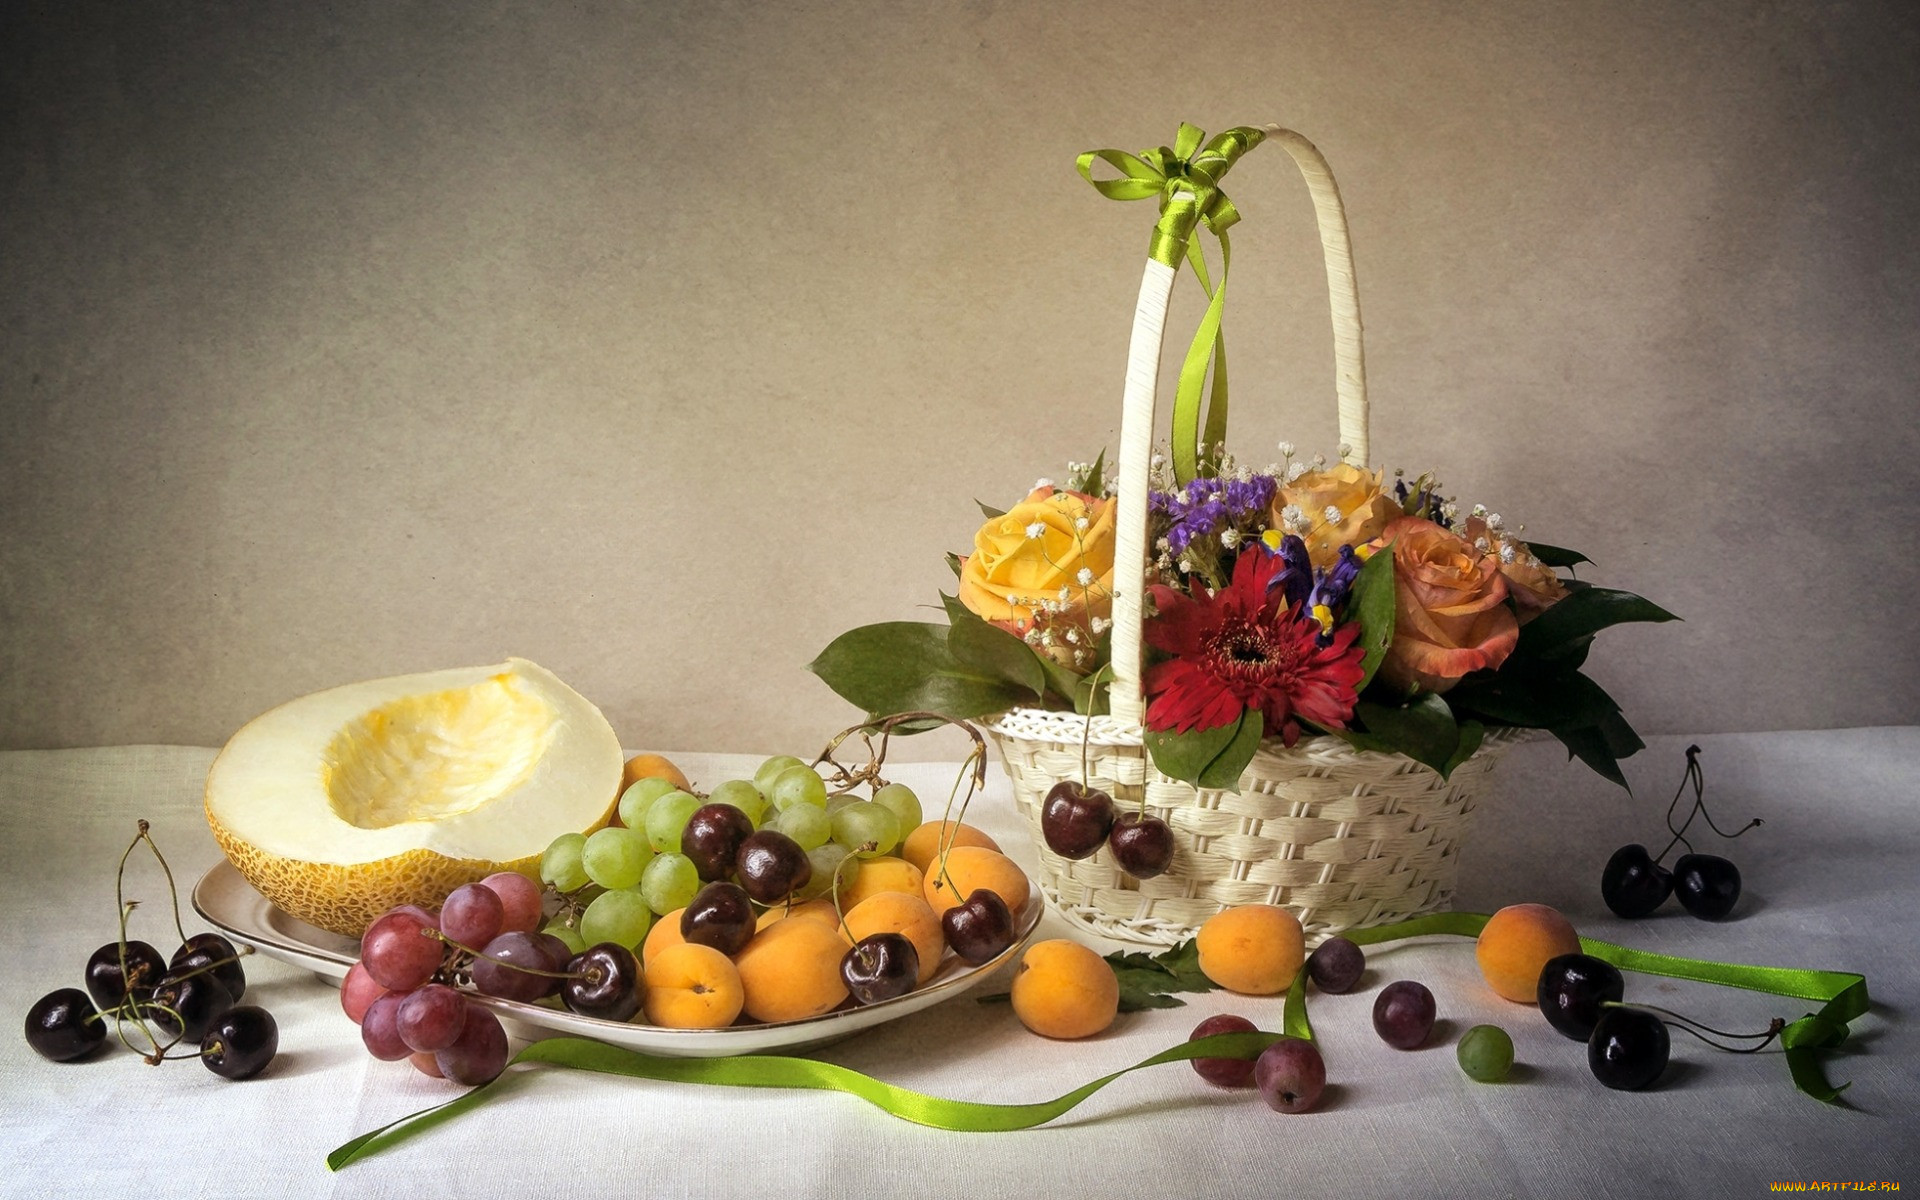 Натюрморты с фруктами и цветами фото и